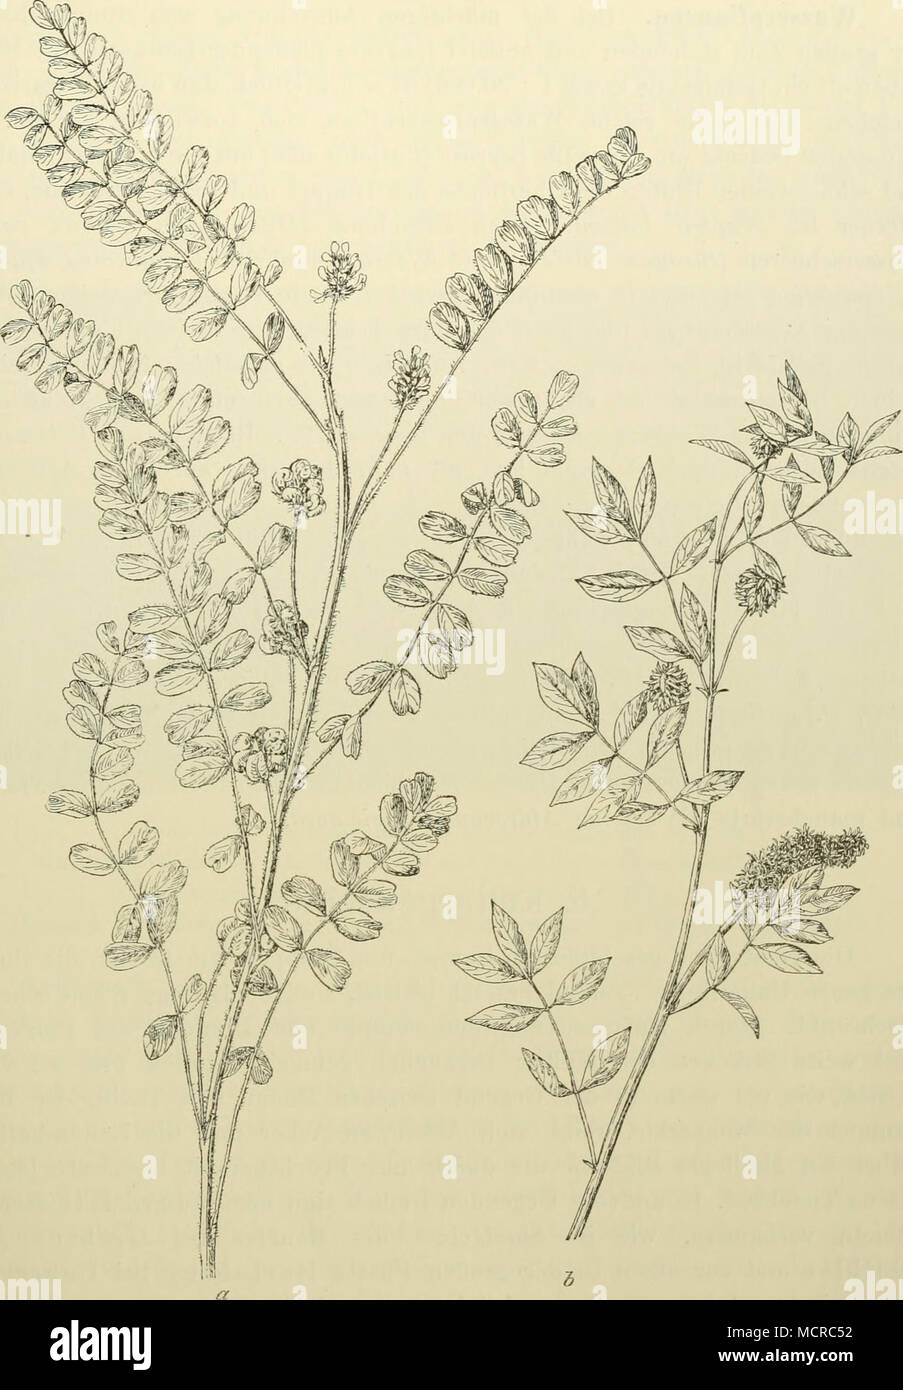 . Abb. 289. a Astragalus contortuplicatus. b Glycyrrhiza cchinata, fulloniim, Asler pundalus und A. caniis, Piilicaria vulgaris, Malricaria Cliamomilla, Centaarea Calcilrapa; auch eine Reihe von Ruderalpflanzen mischt sich gern in die Süßholzbestände, wie z. B. Panicum Crus galli, Selaria glaiica, Digitaria sanguinalis und D. ciliaris, Chenopodium glaucum, C. album und C. urbicum, Polygoniim lapalhifoliiim, Xanlhium slriimariiim und X. spinosum. 32* Stock Photo